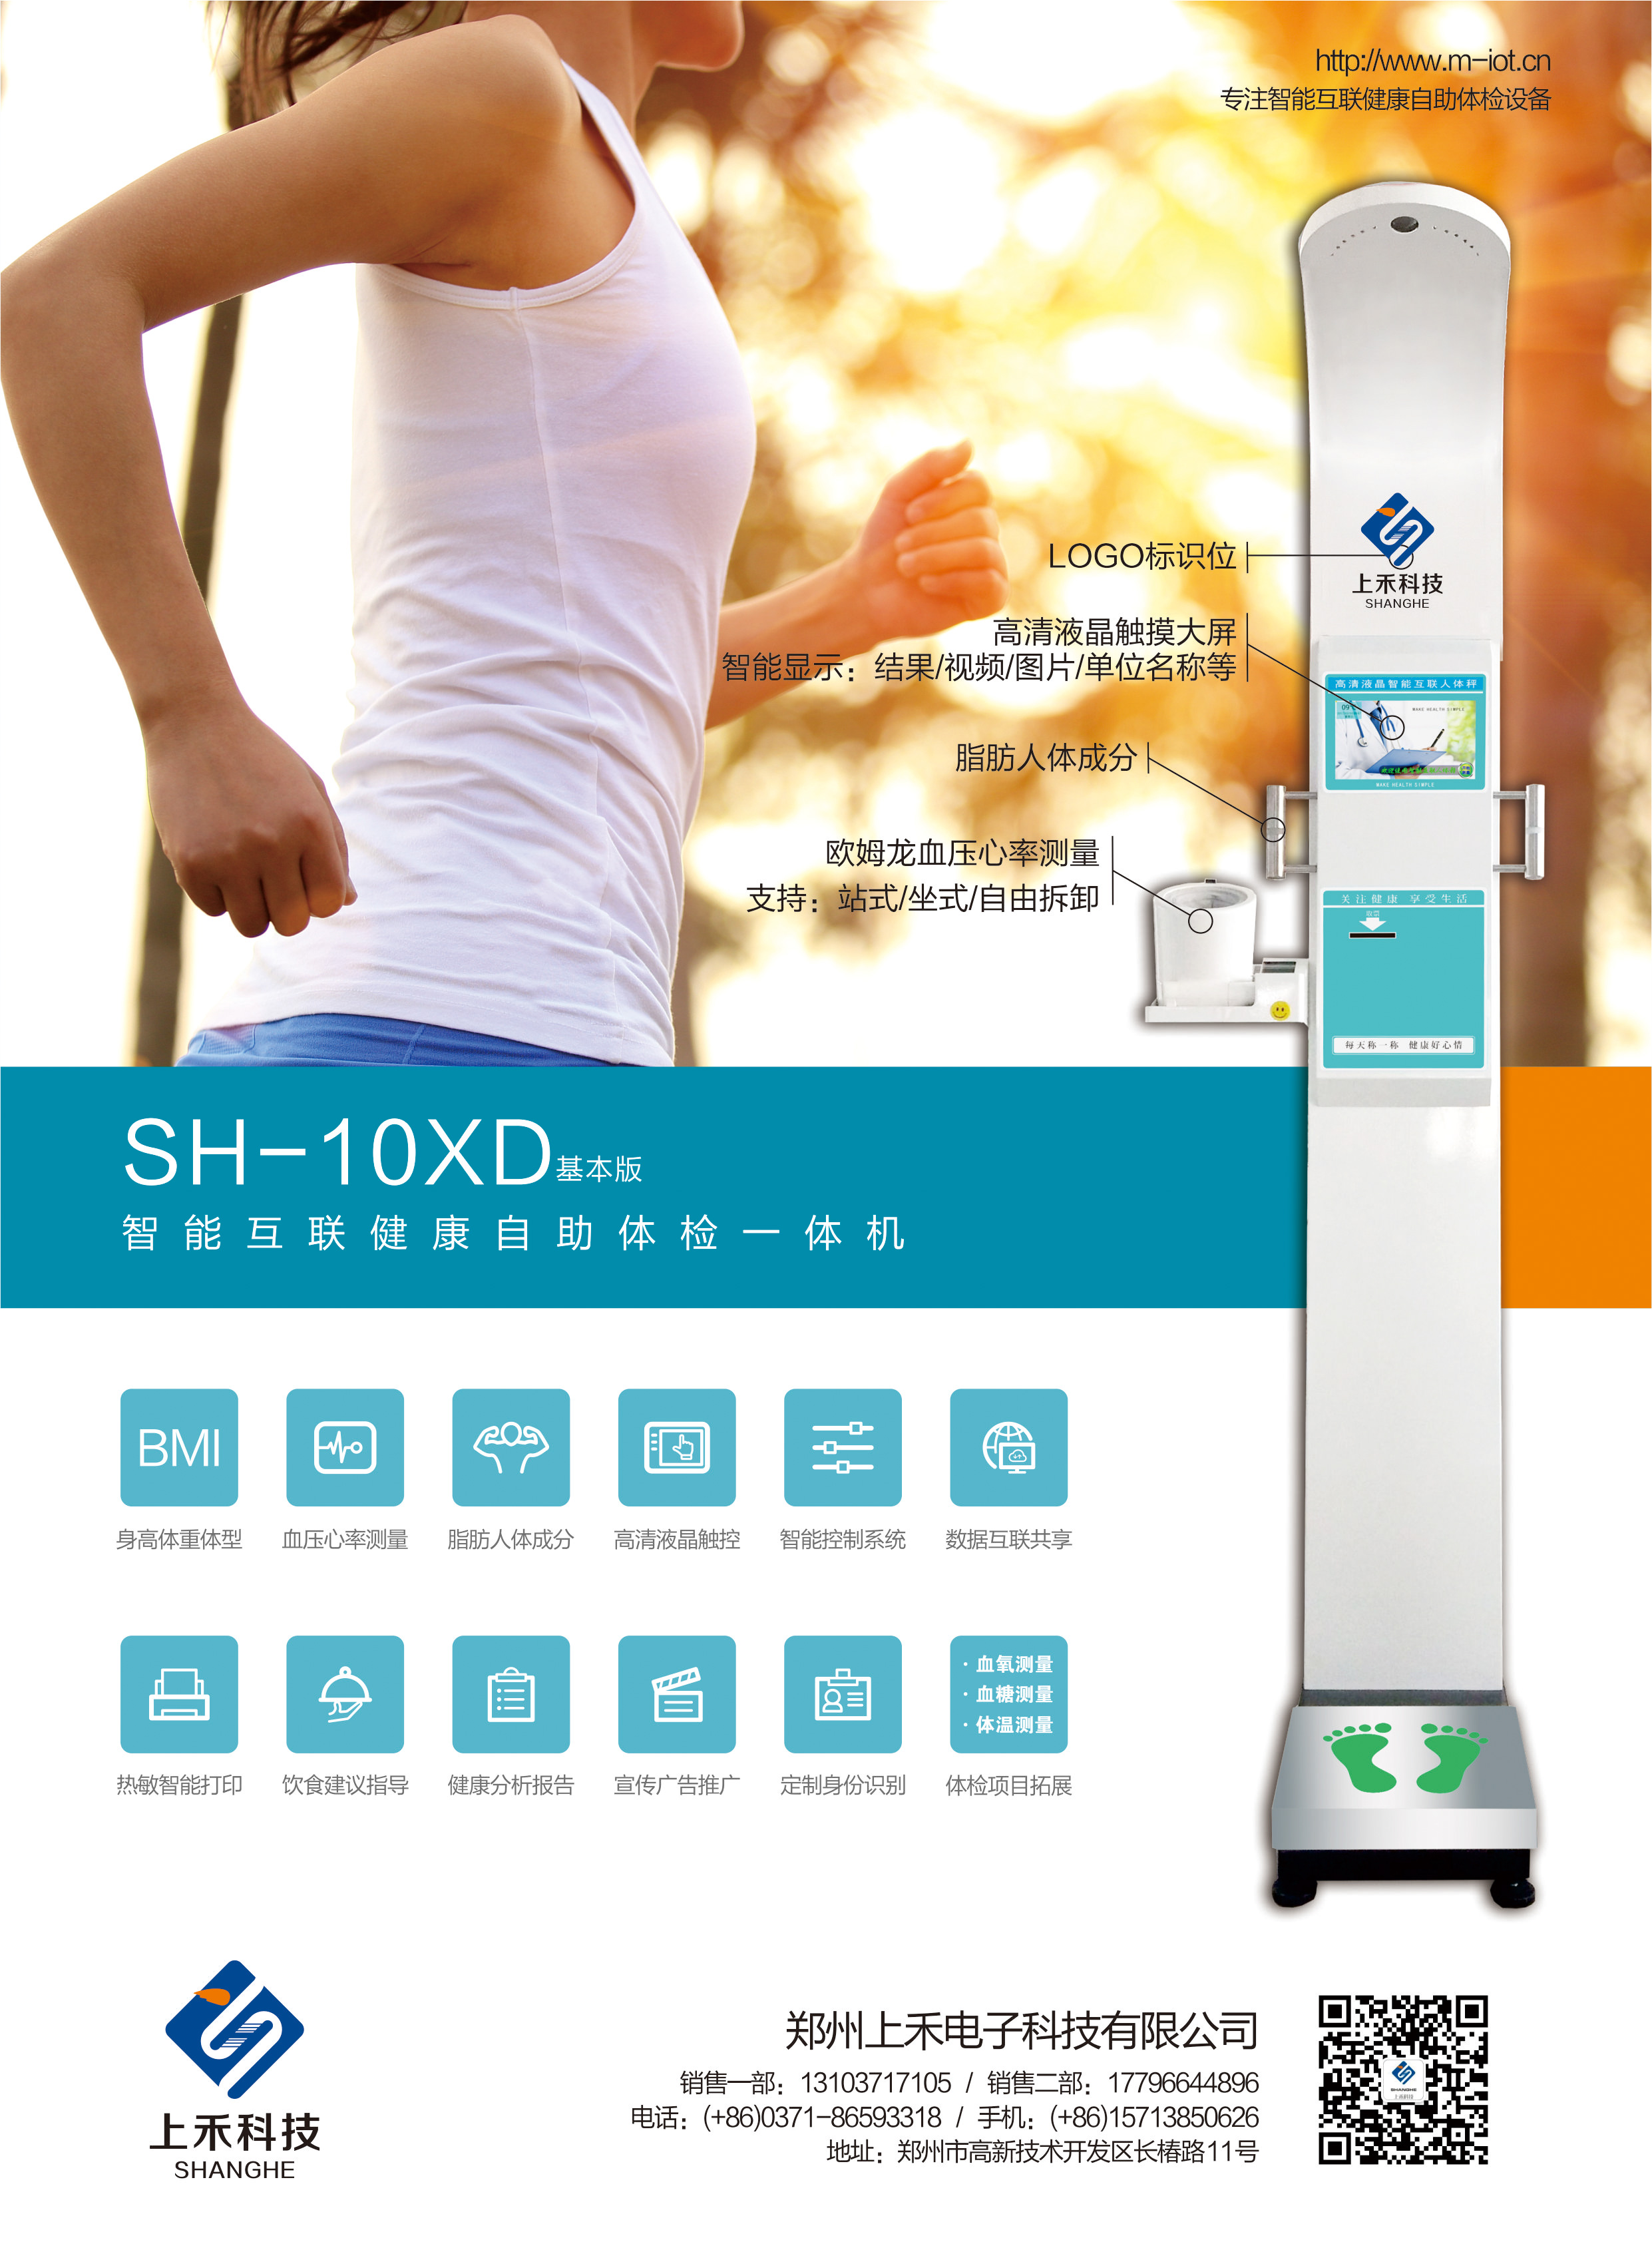 SH-10XD智能互联健康自助体检一体机